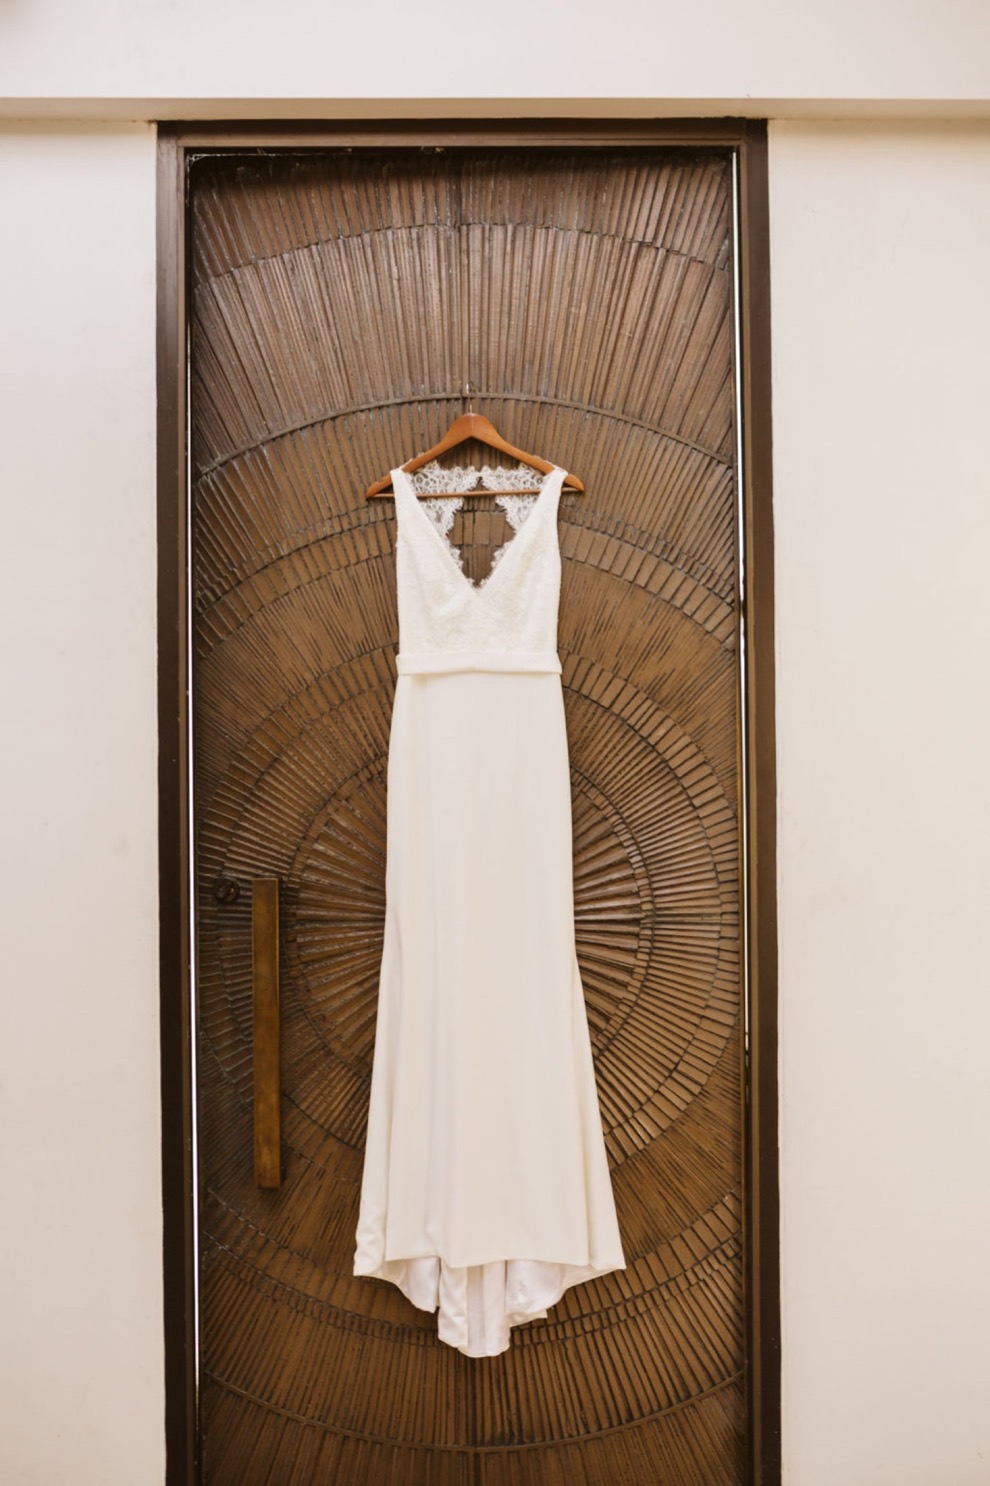 BHLDN bridal dress hanging on wooden door